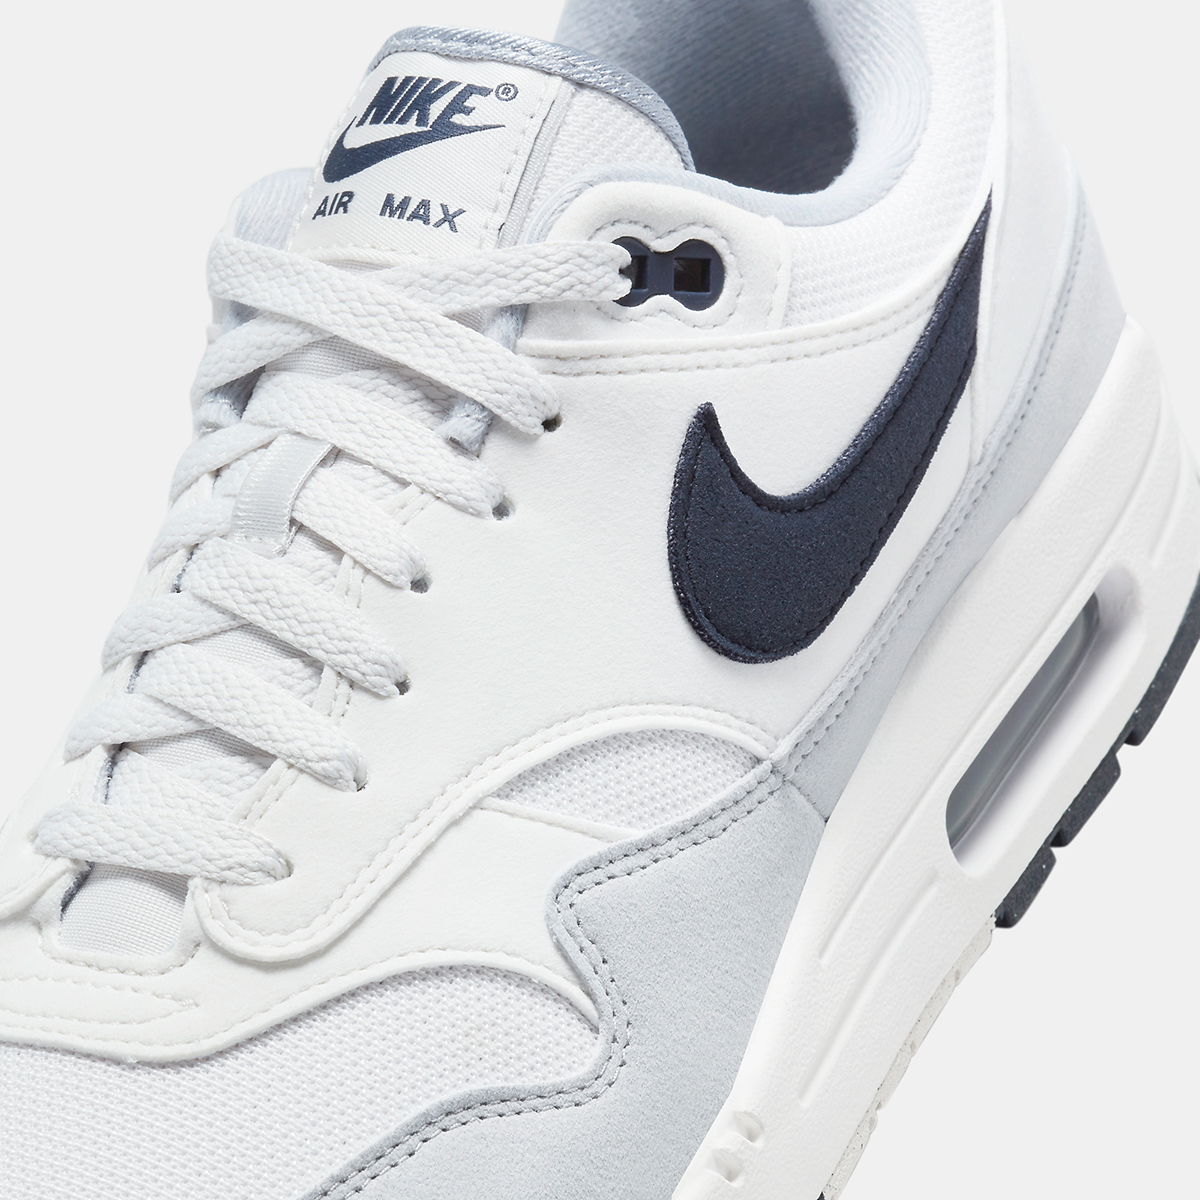 Nike's Air Max 1 